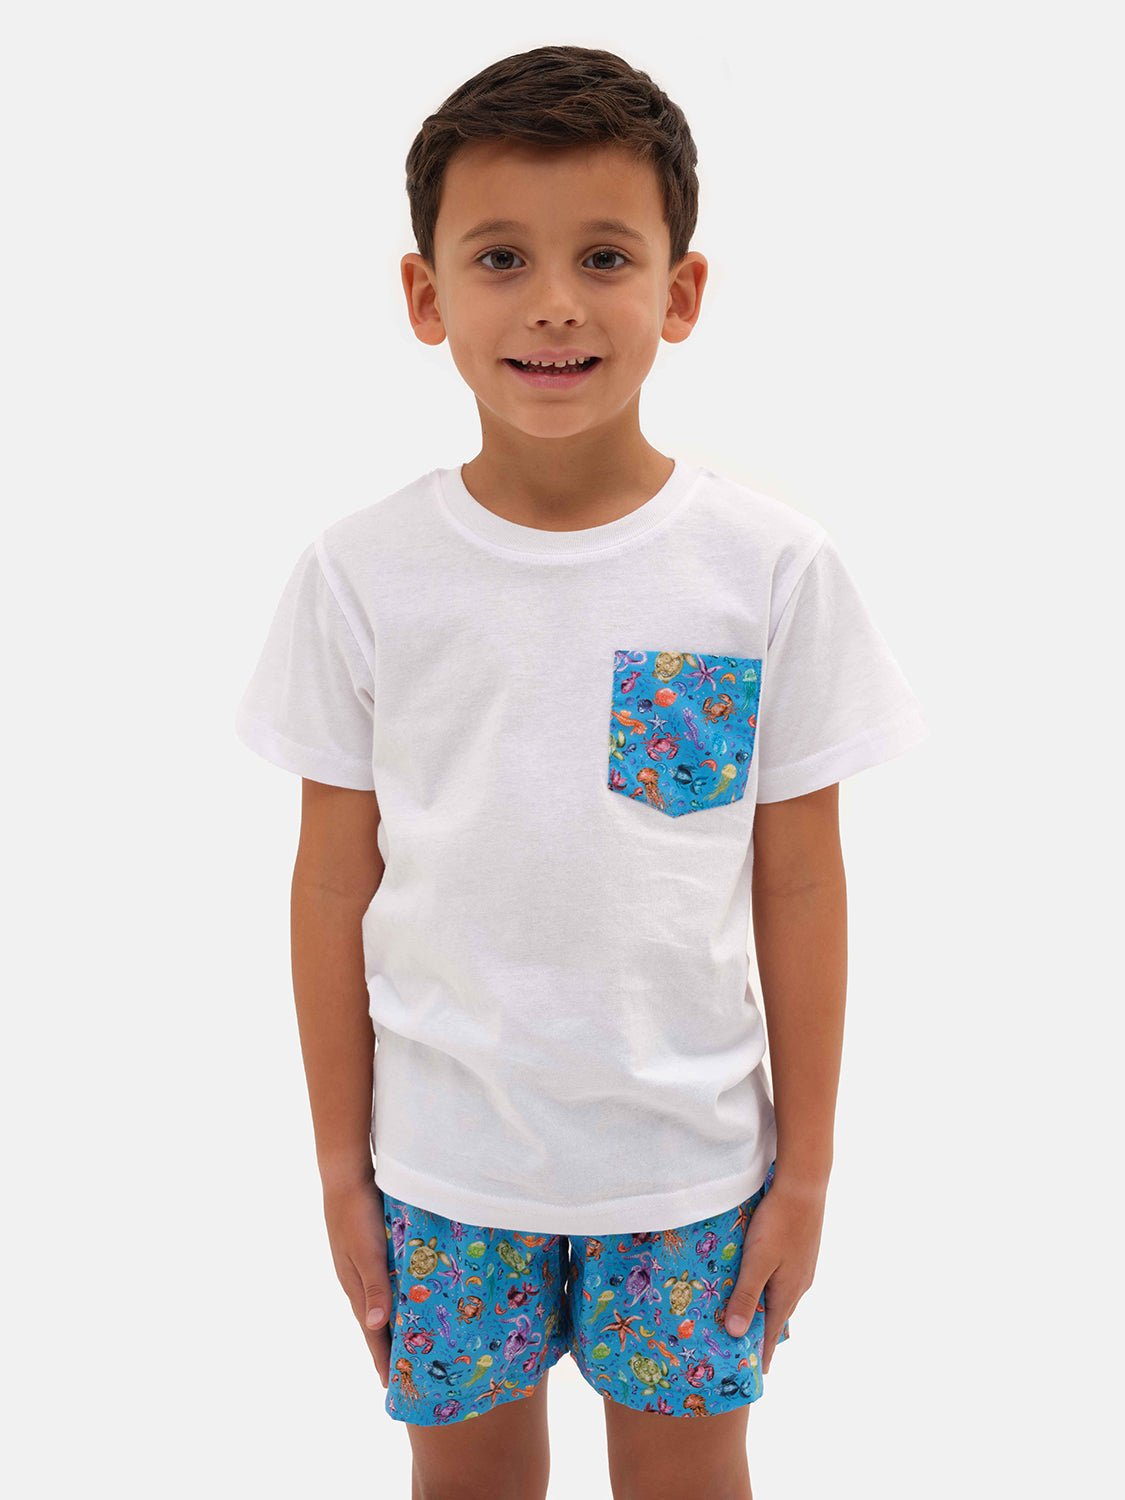 Ocean boy t-shirt